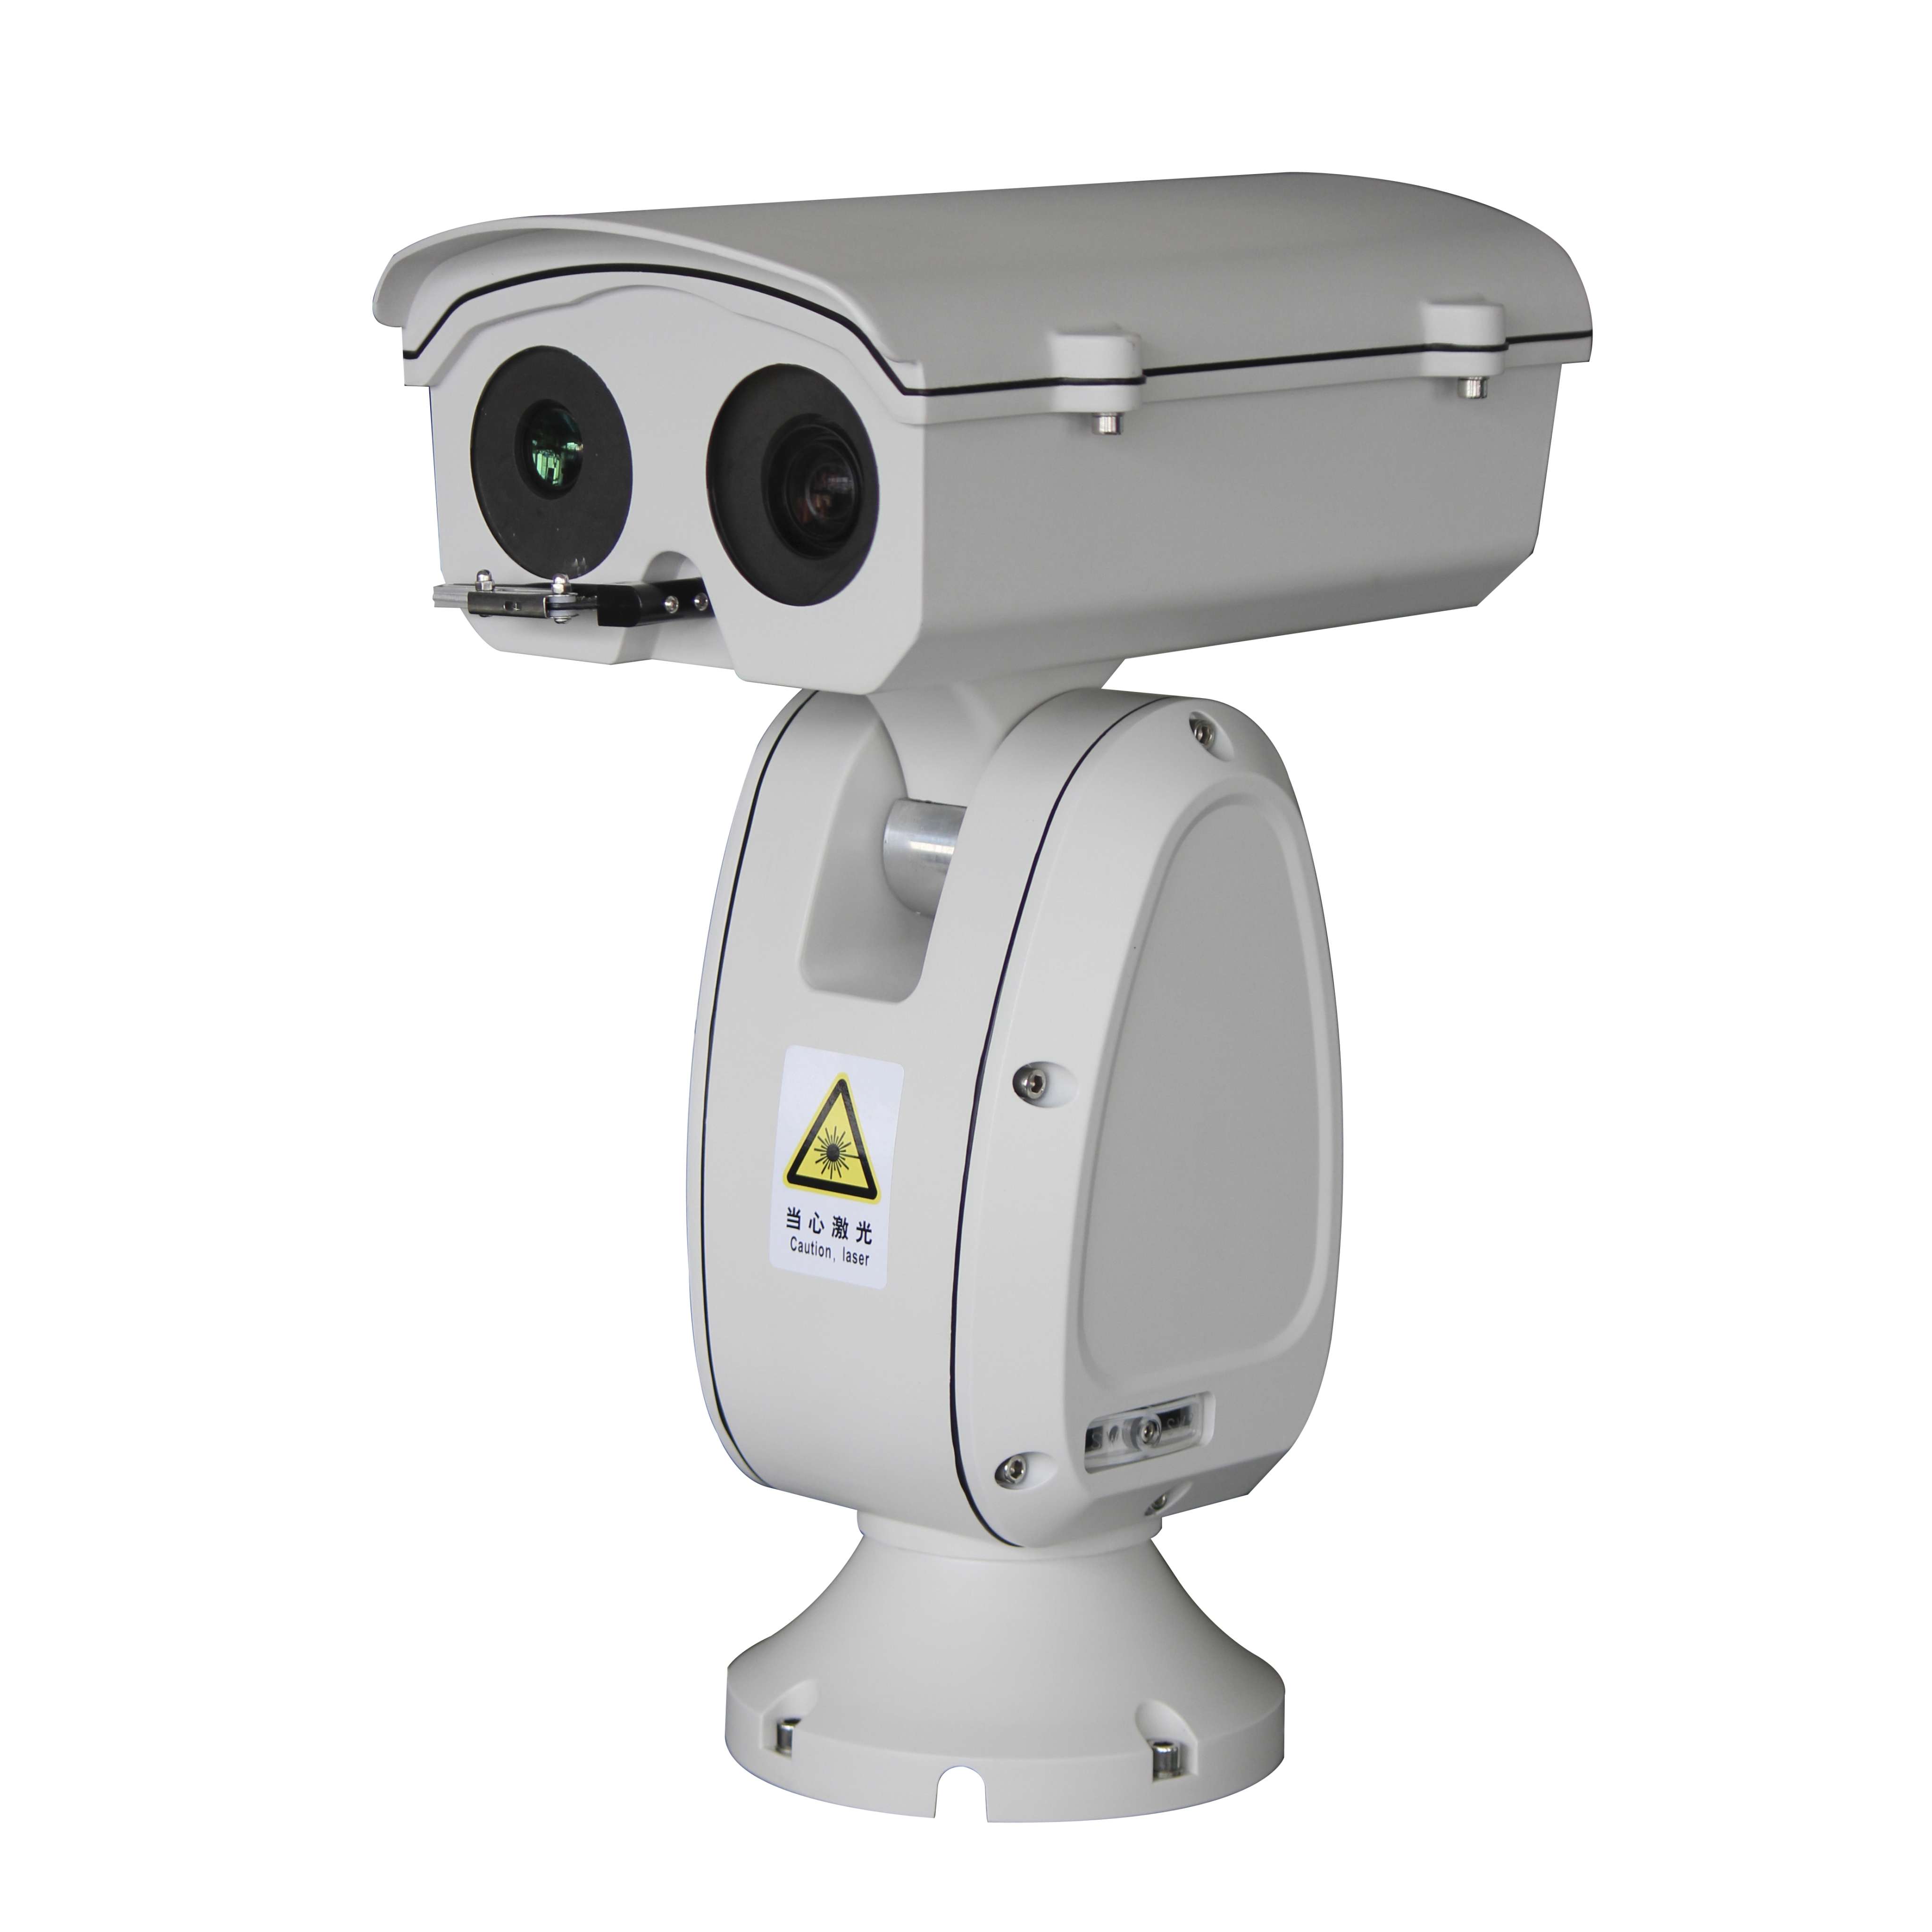 激光云台摄像机,森林监控,码头监控,热成像夜视仪,远距离监控